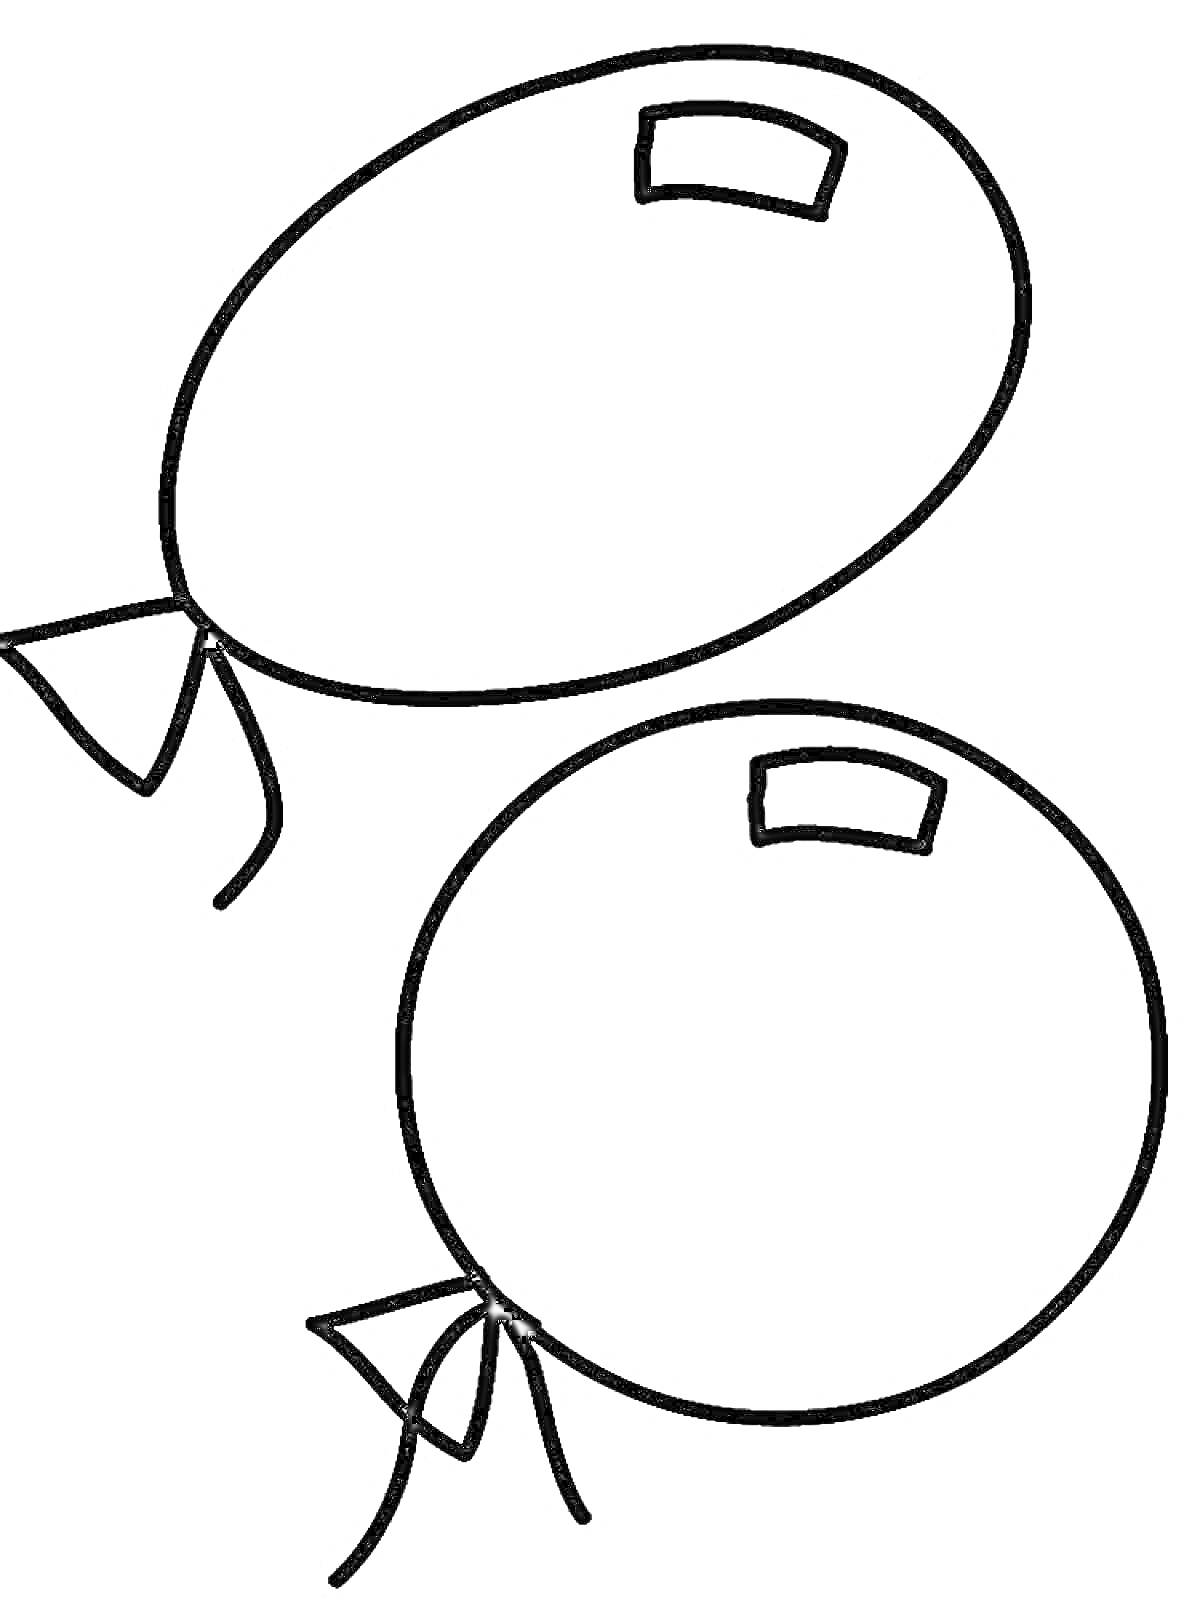 Раскраска Два воздушных шарика с узелками и прямоугольными пятнами